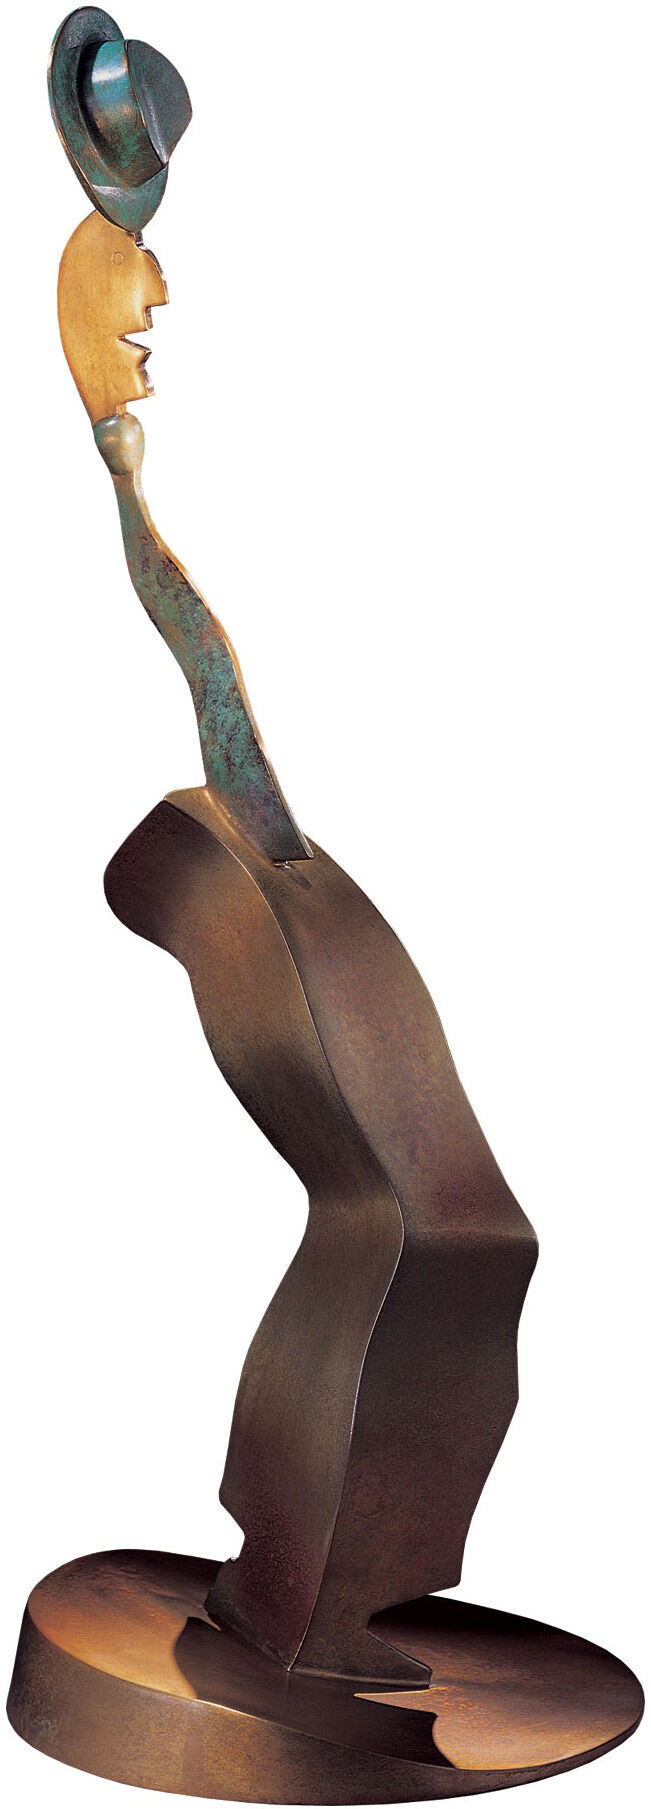 Sculpture "Free Spirit", bronze by Allen Jones